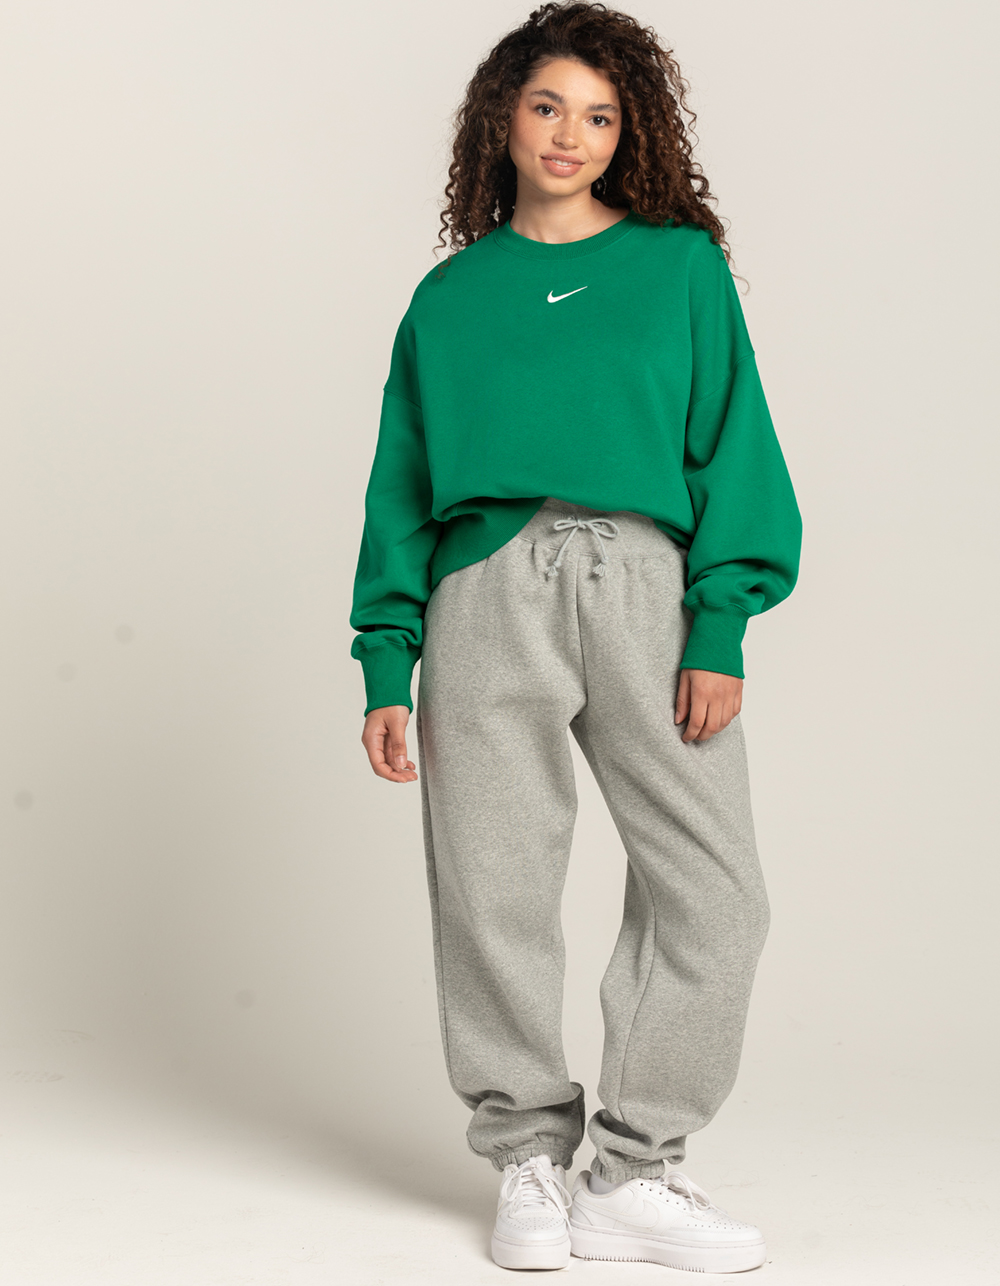 NIKE Nike Sportswear Phoenix Fleece Women's High-Waisted Wide-Leg Sweatpants, Sage green Women's Casual Pants